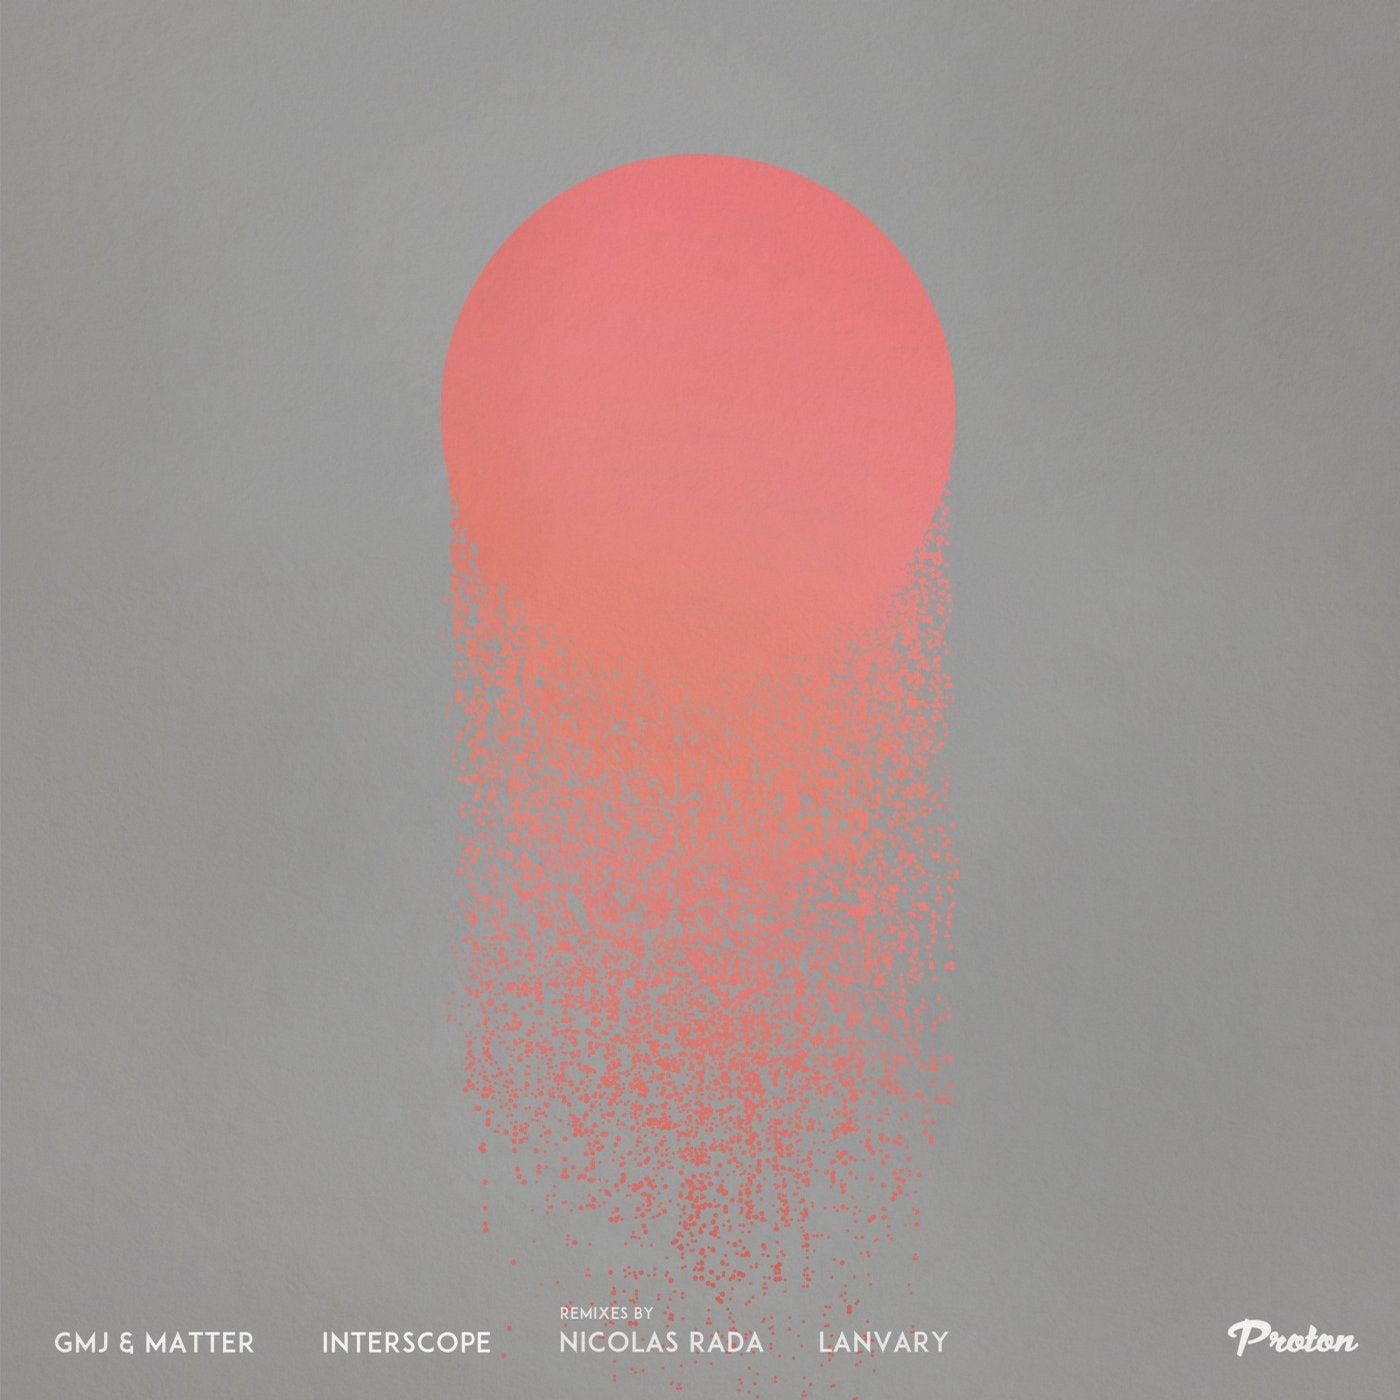 Interscope (Nicolas Rada, Lanvary Remixes)